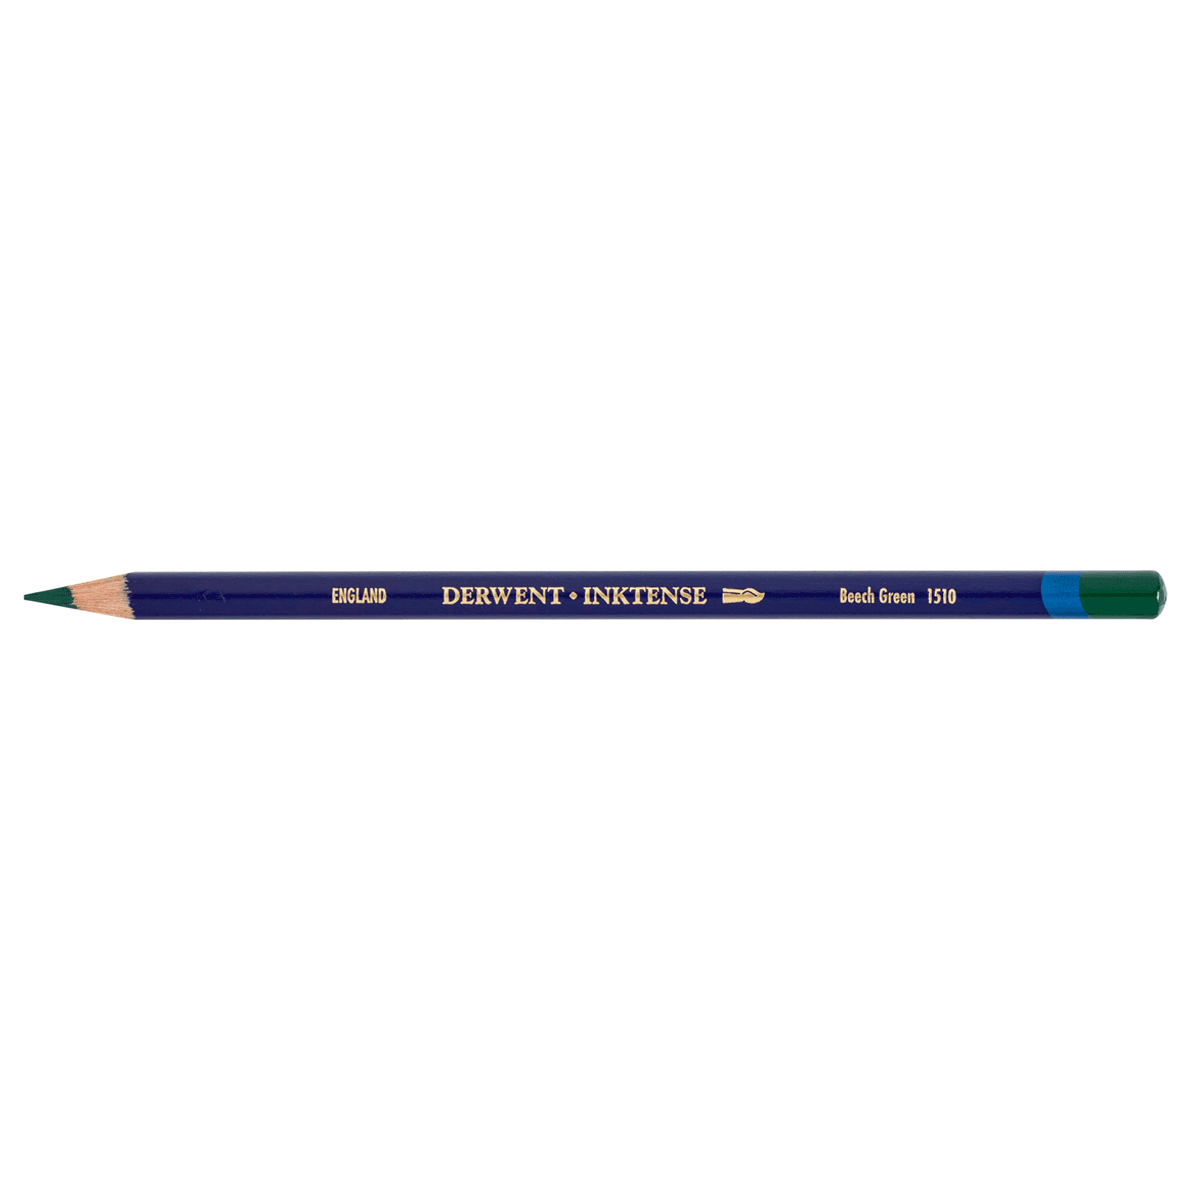 Inktense 1510 Beech Green Pencil